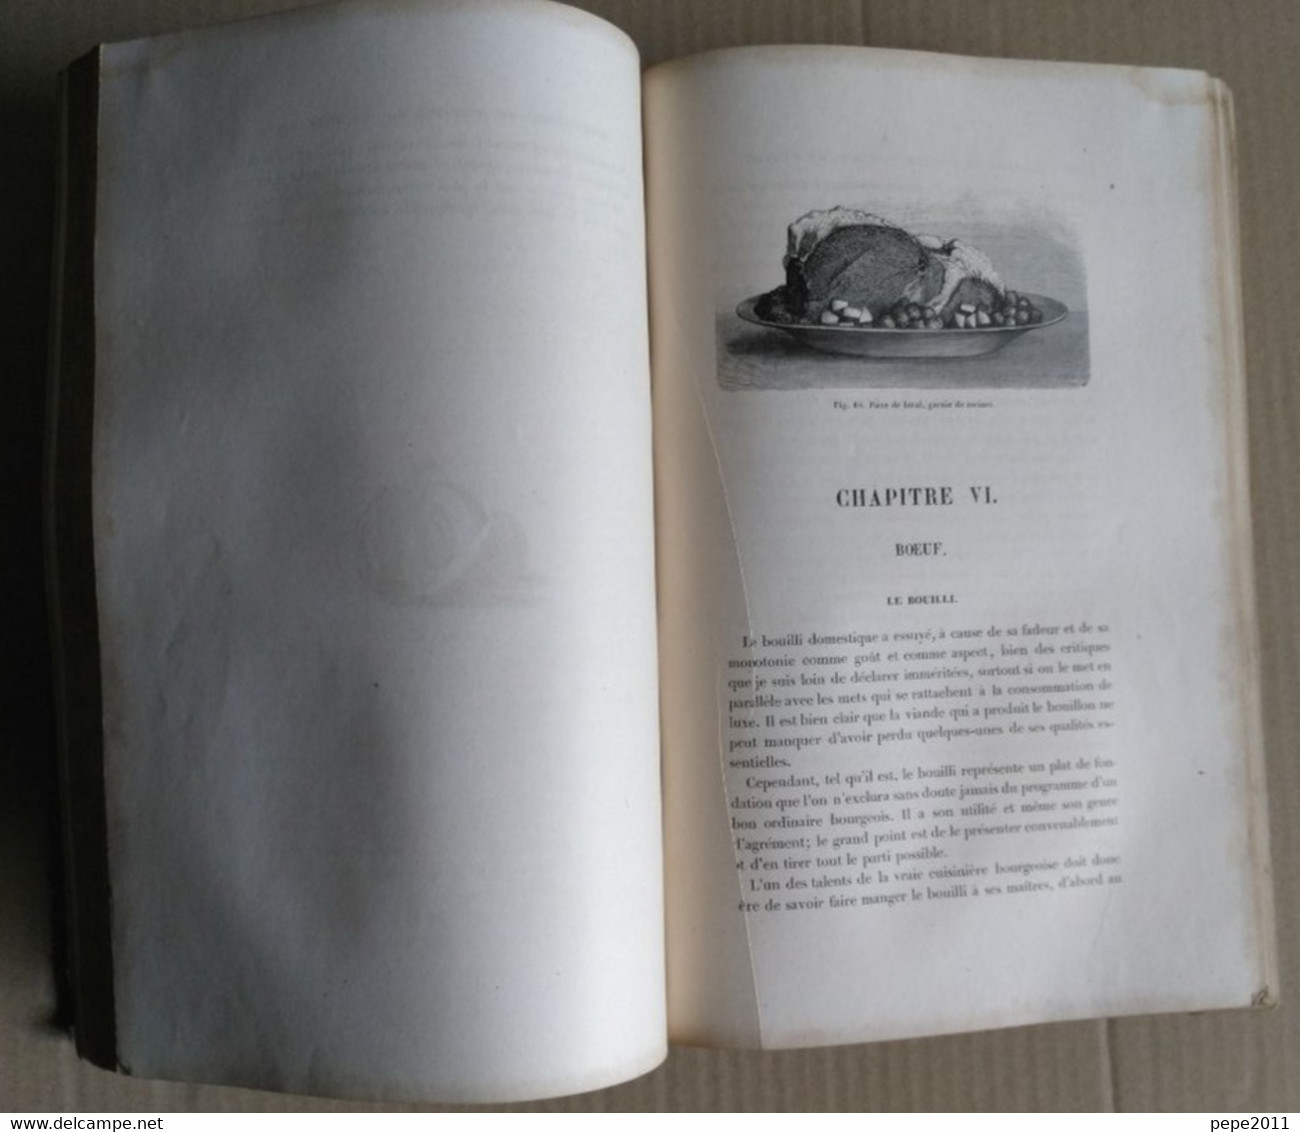 GASTRONOMIE LE LIVRE DE CUISINE Jules GOUFFE - Cuisine Ménage et Grande Cuisine - Hachette 1877